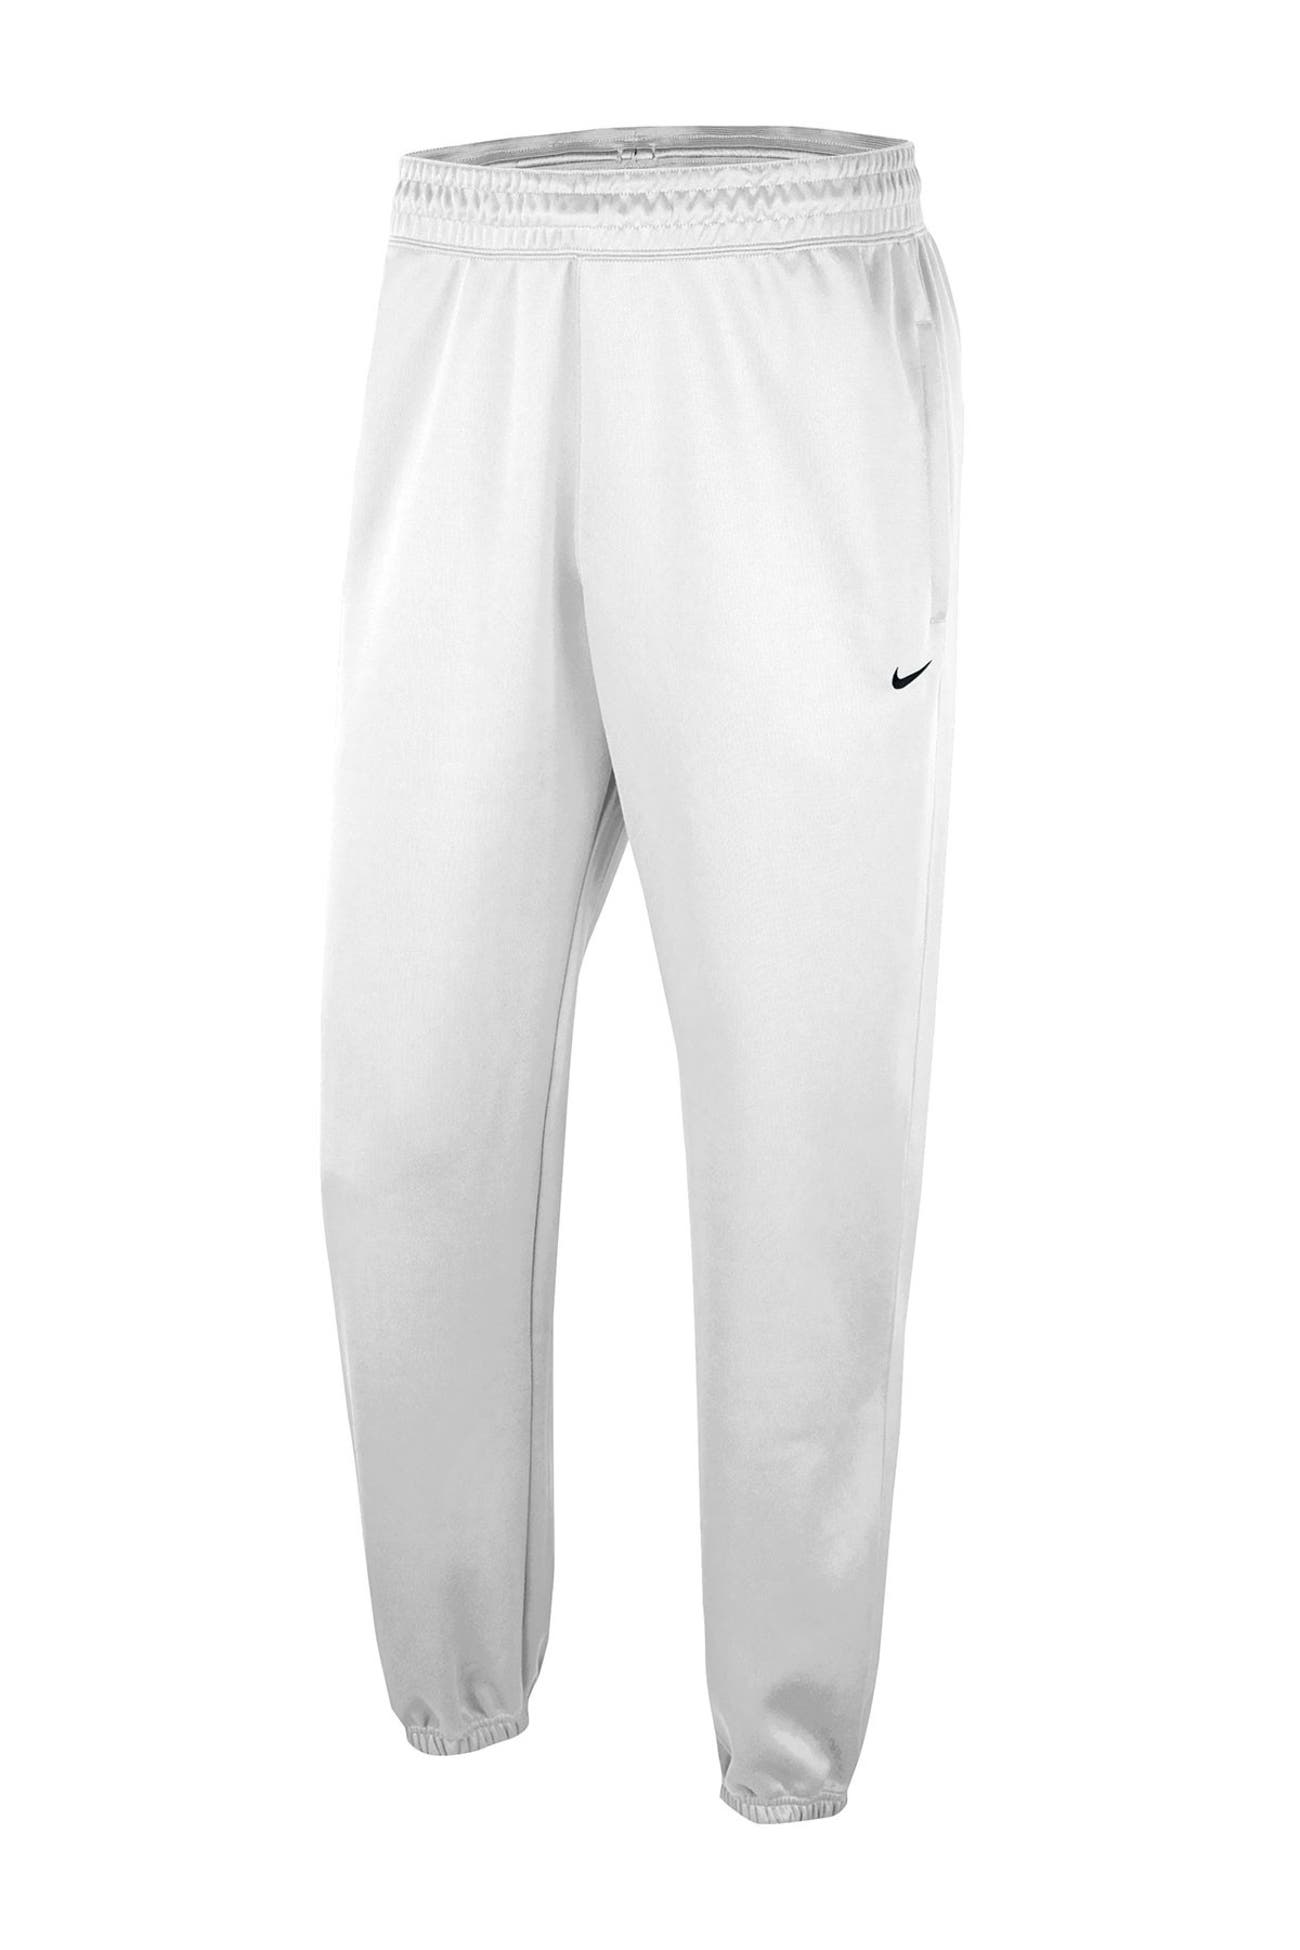 Nike | Spotlight Dri-FIT Jogger Pants | Nordstrom Rack